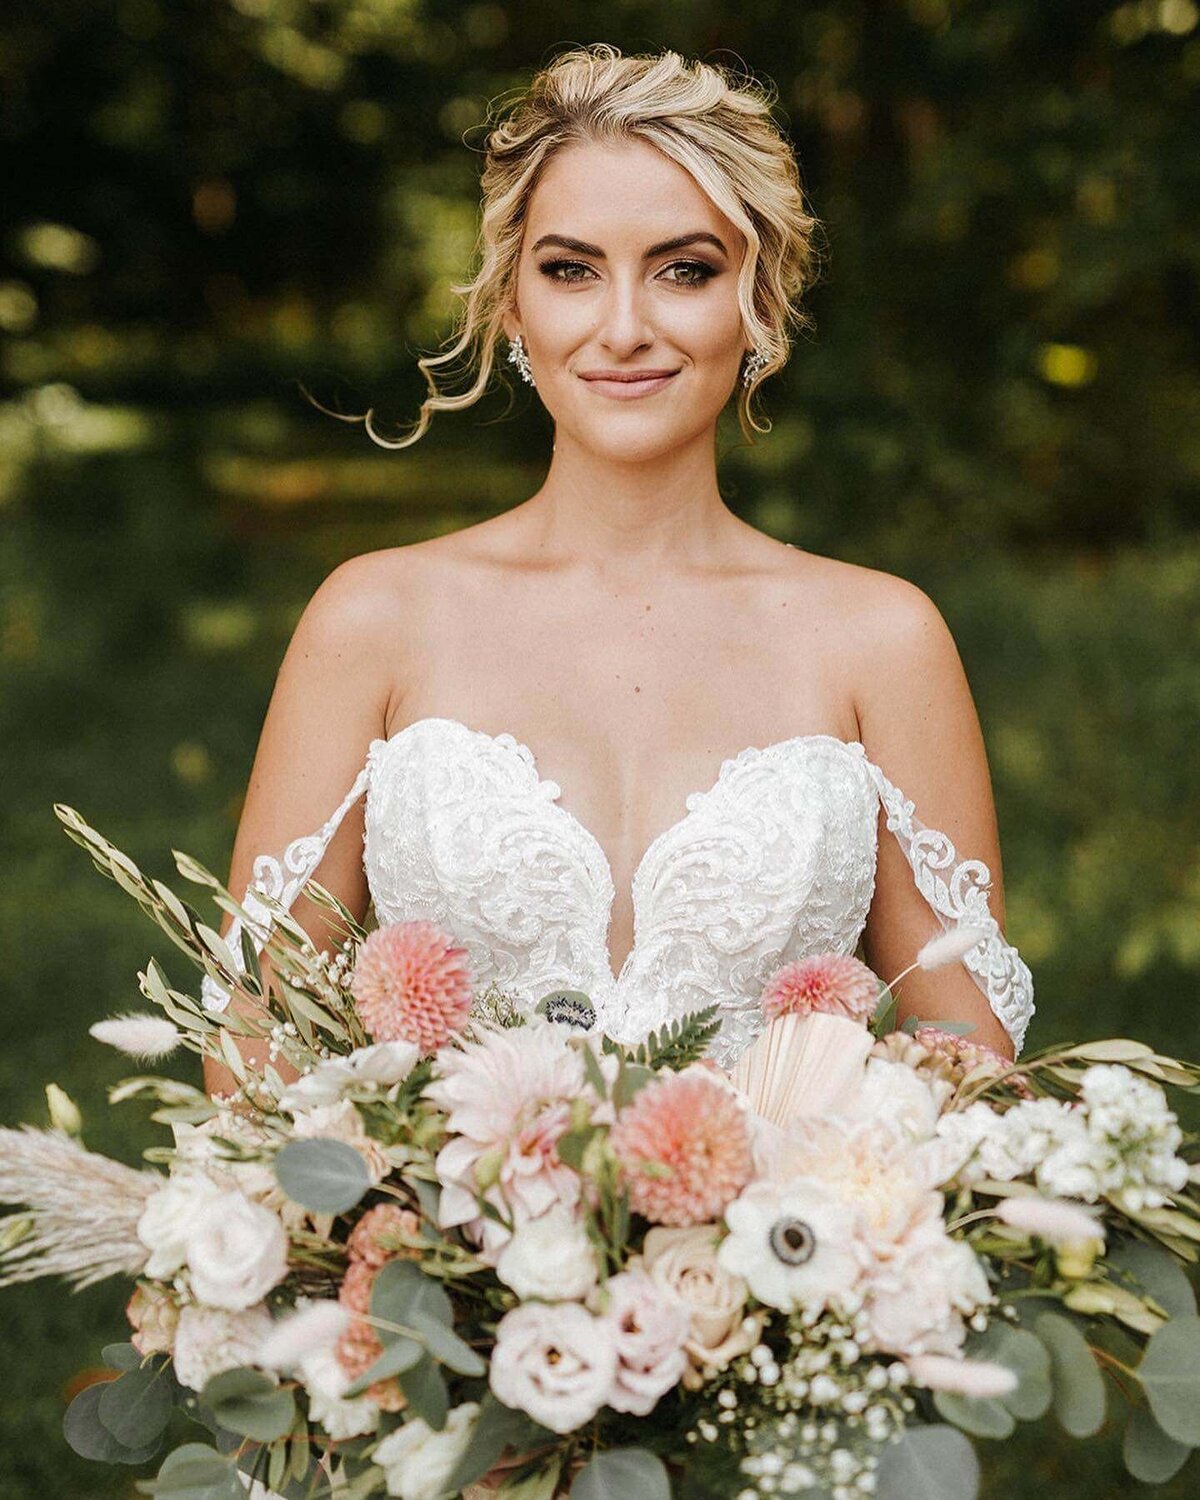 Natalie Brown wedding - bride holding flowers